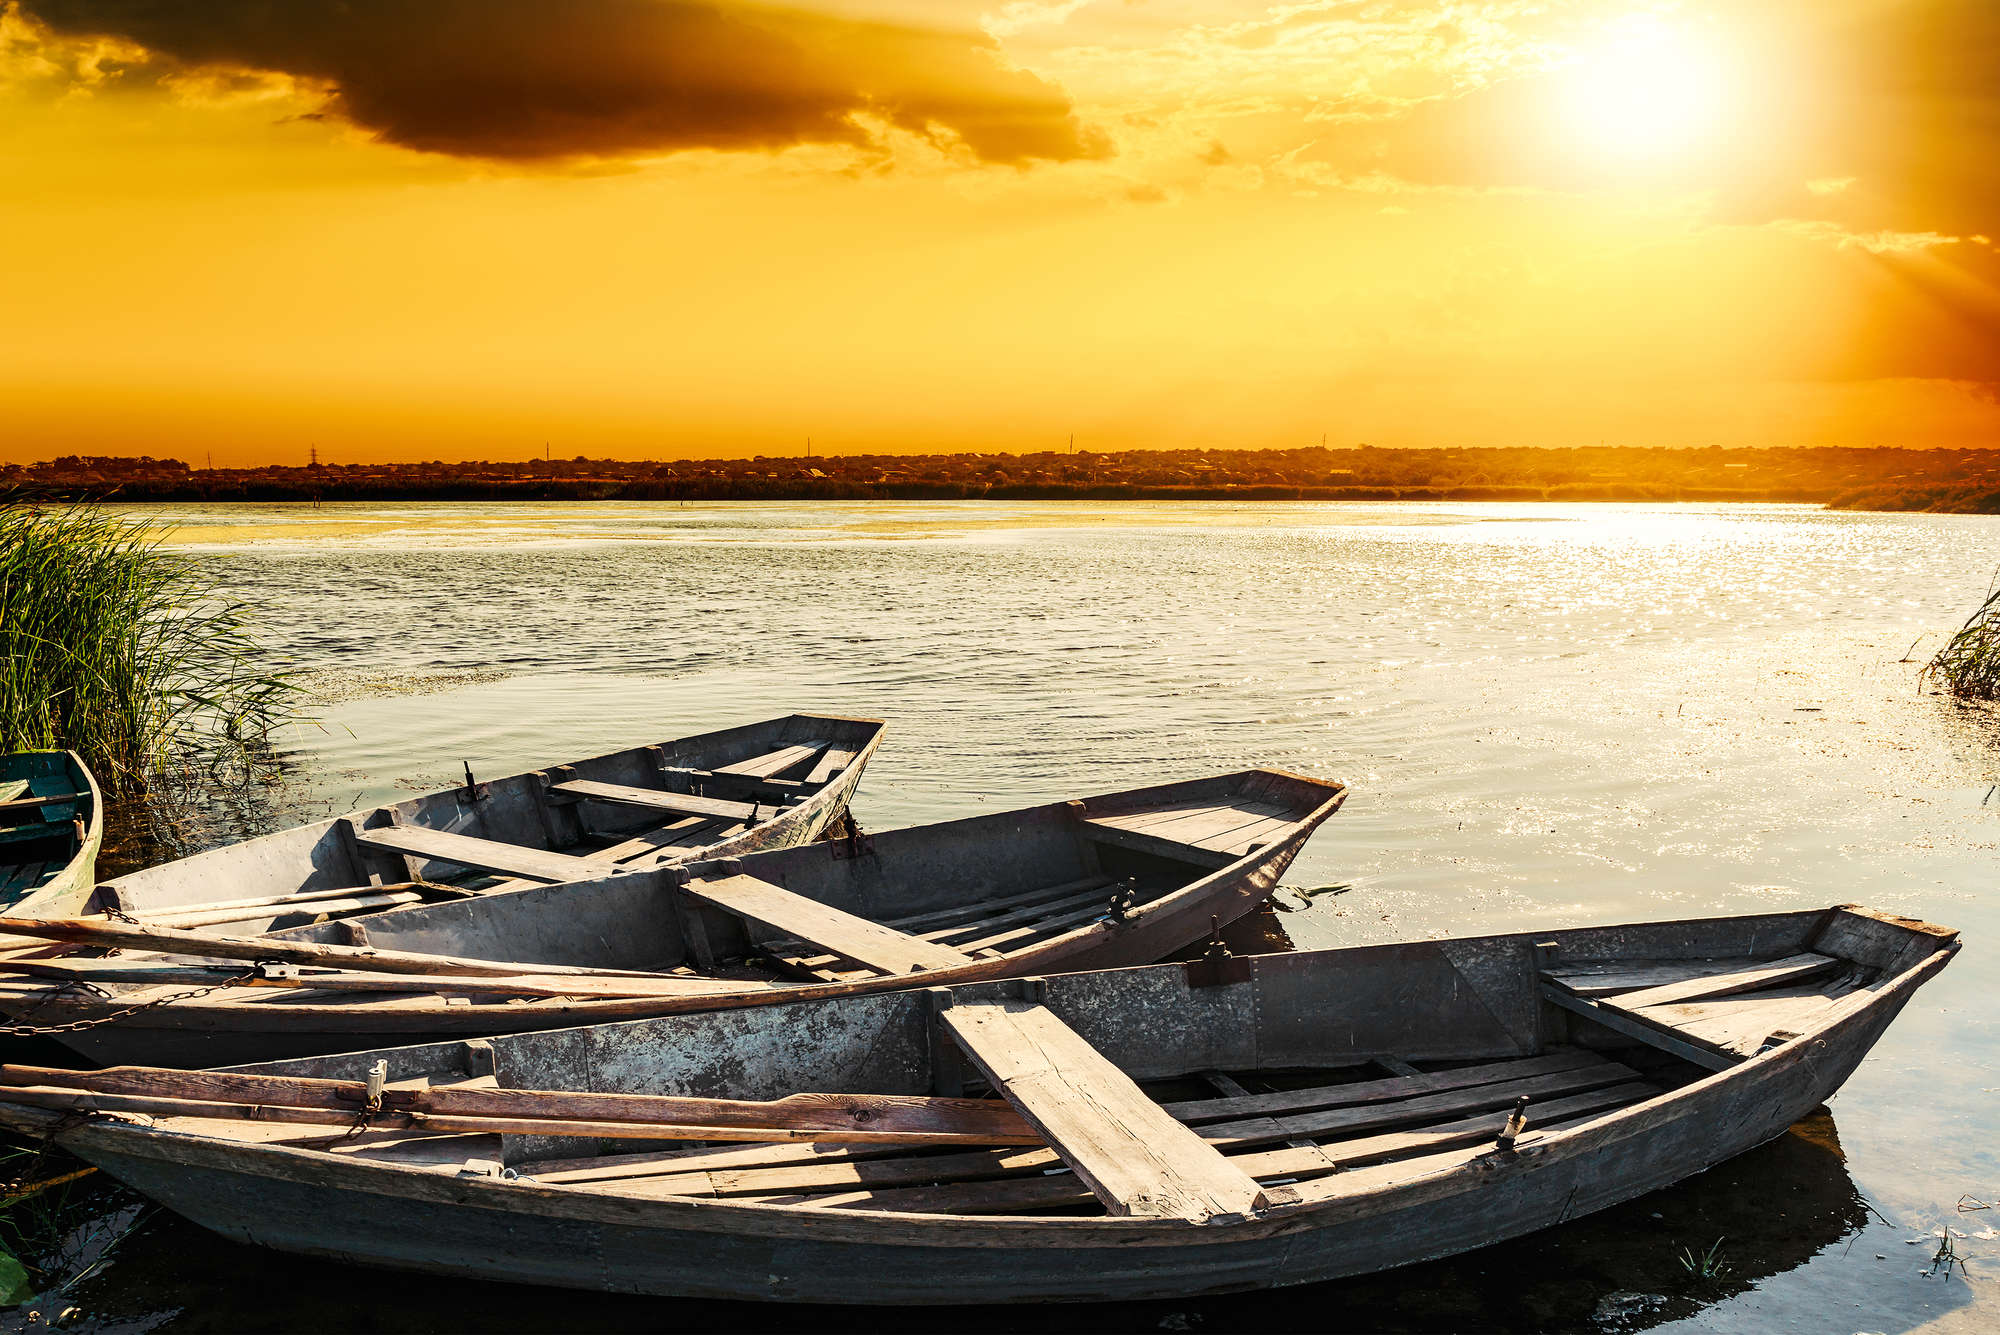             Natuurbehang houten boten aan het meer op structuurloze stof
        